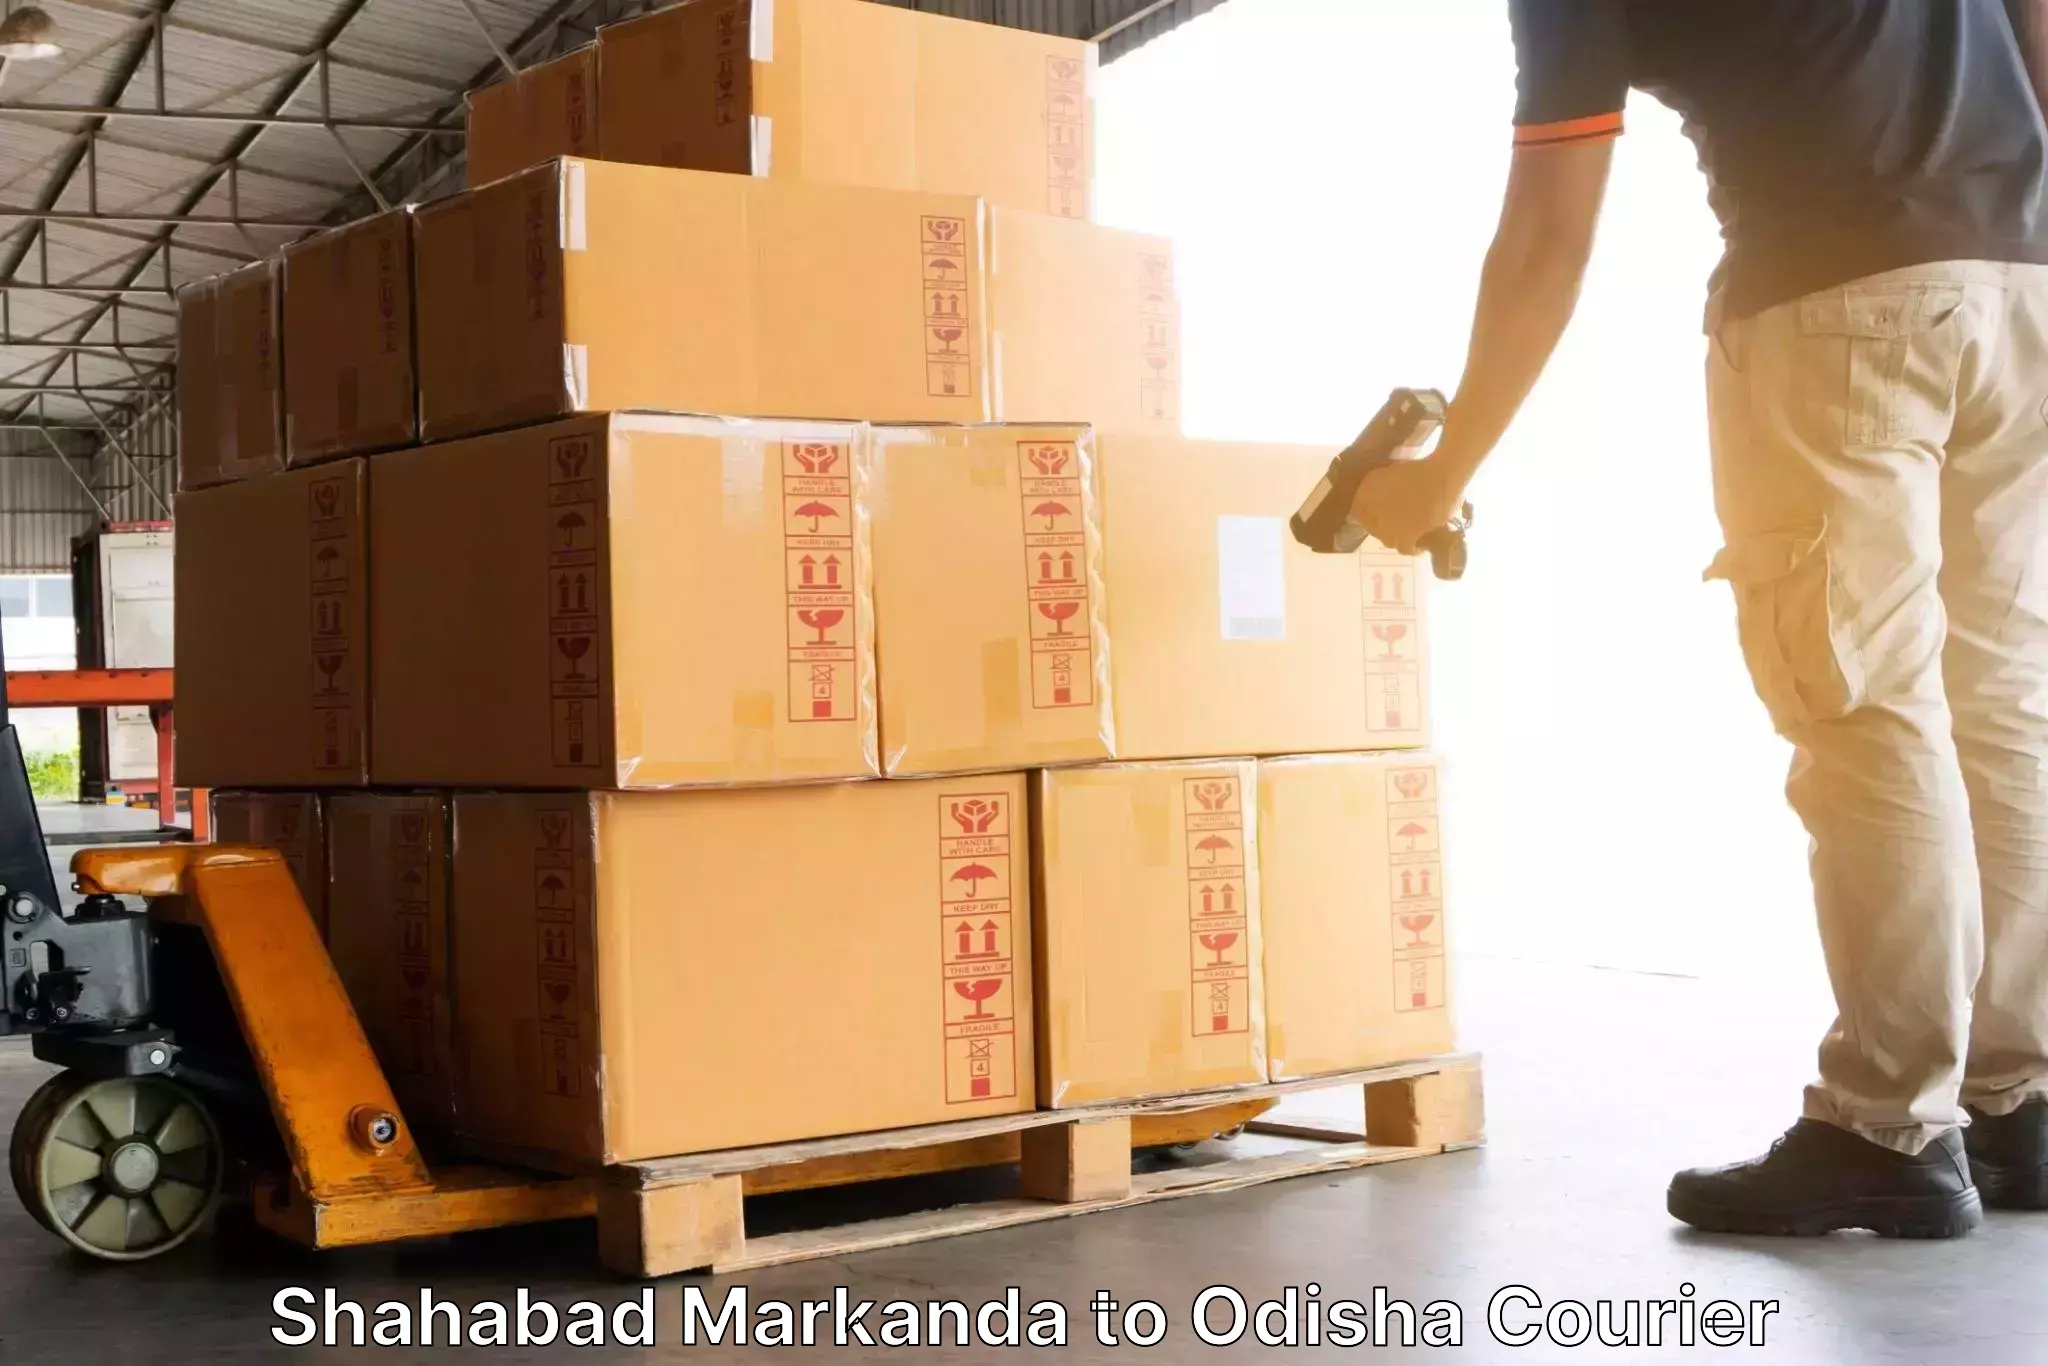 Reliable logistics providers Shahabad Markanda to Ganjam